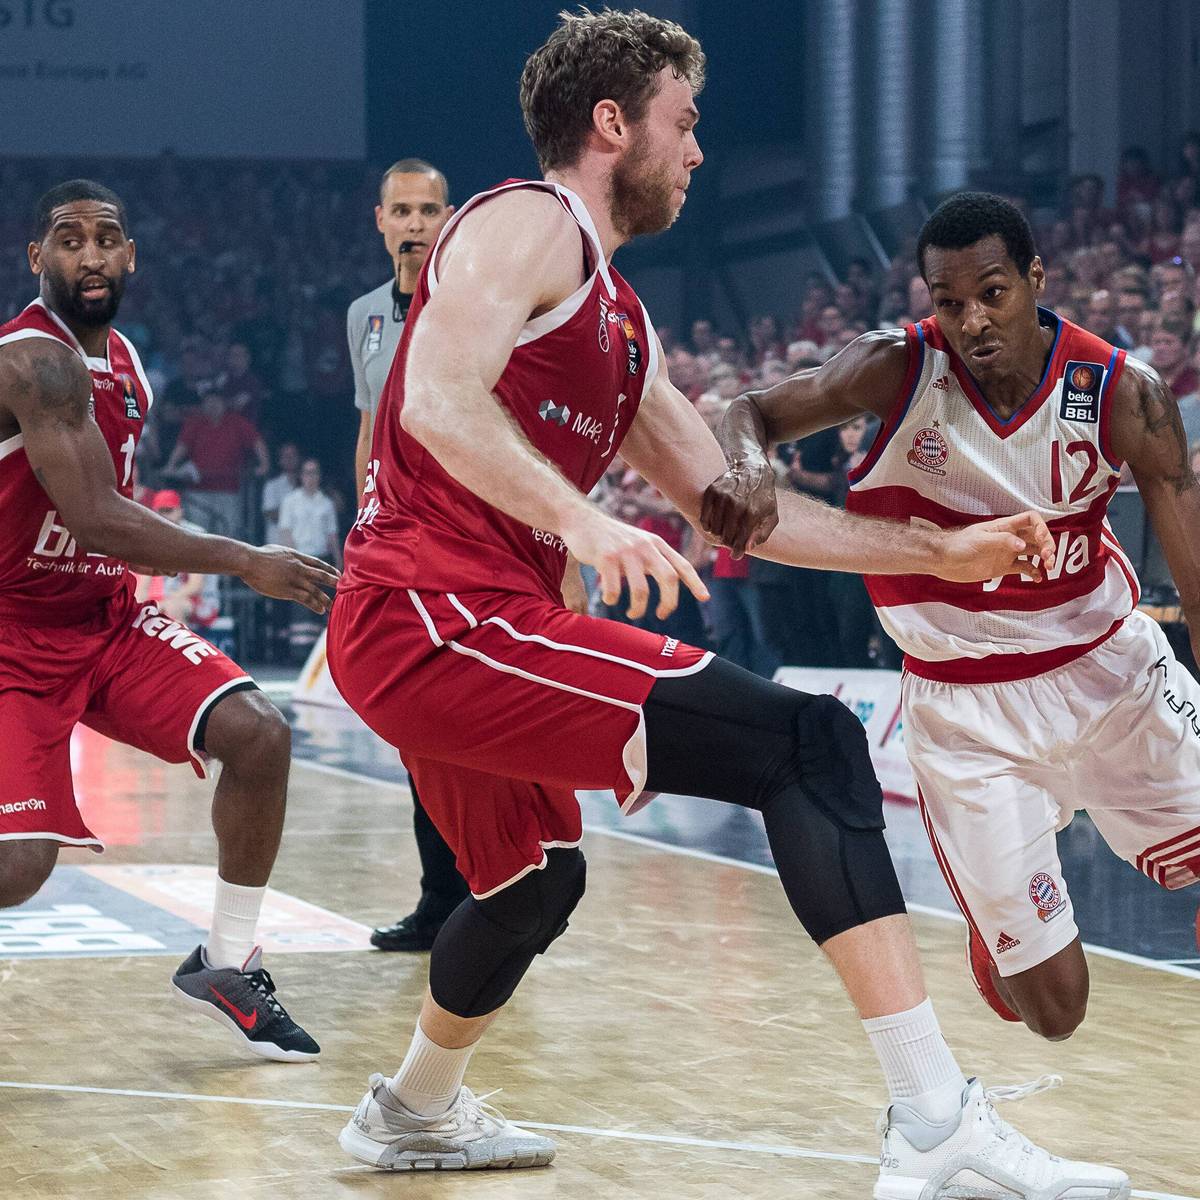 Bayern München gegen Brose Baskets Bamberg live im TV, Livestream und Liveticker